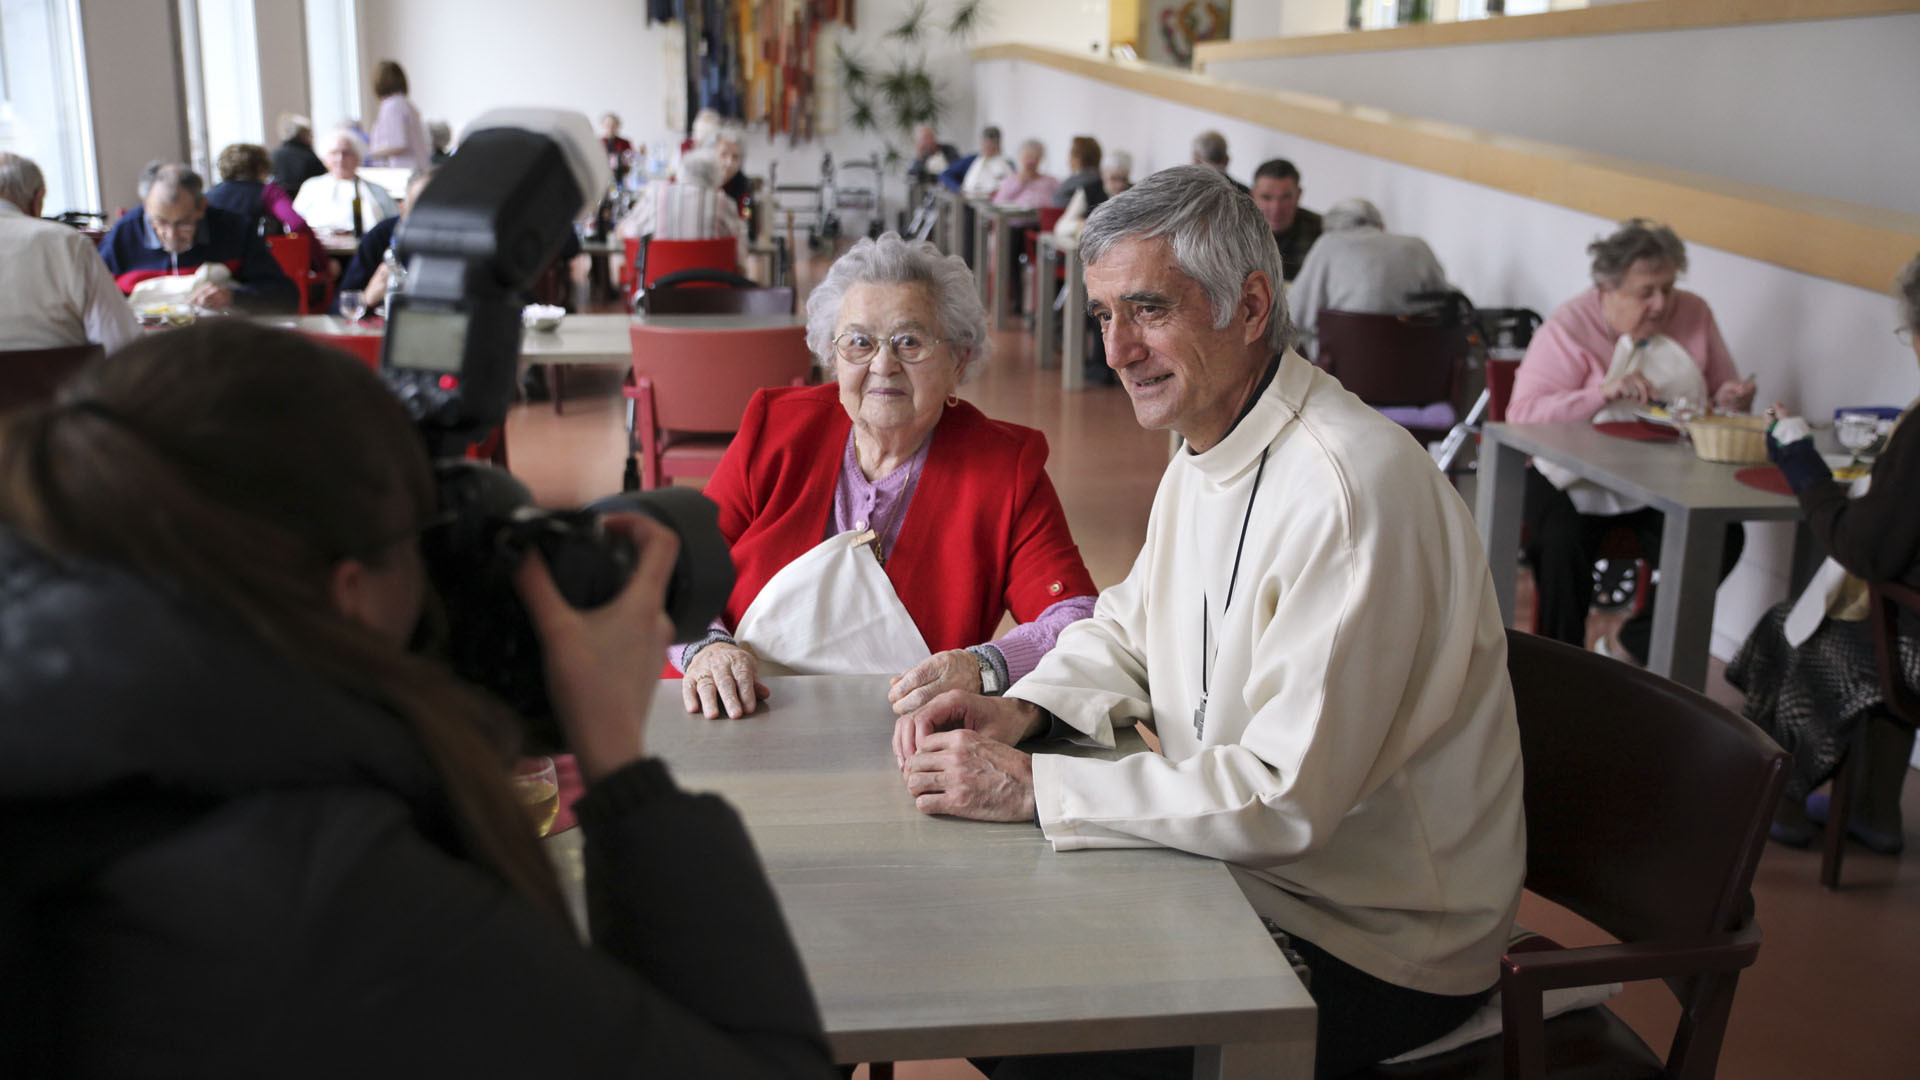 Brigue le 12 févreir 2016. L'évêque de Sion, Mgr Lovey prend la pause avec un pensionnaire du Home "Englischgruss" à Brigue. (Photo: B. Hallet/cath.ch)